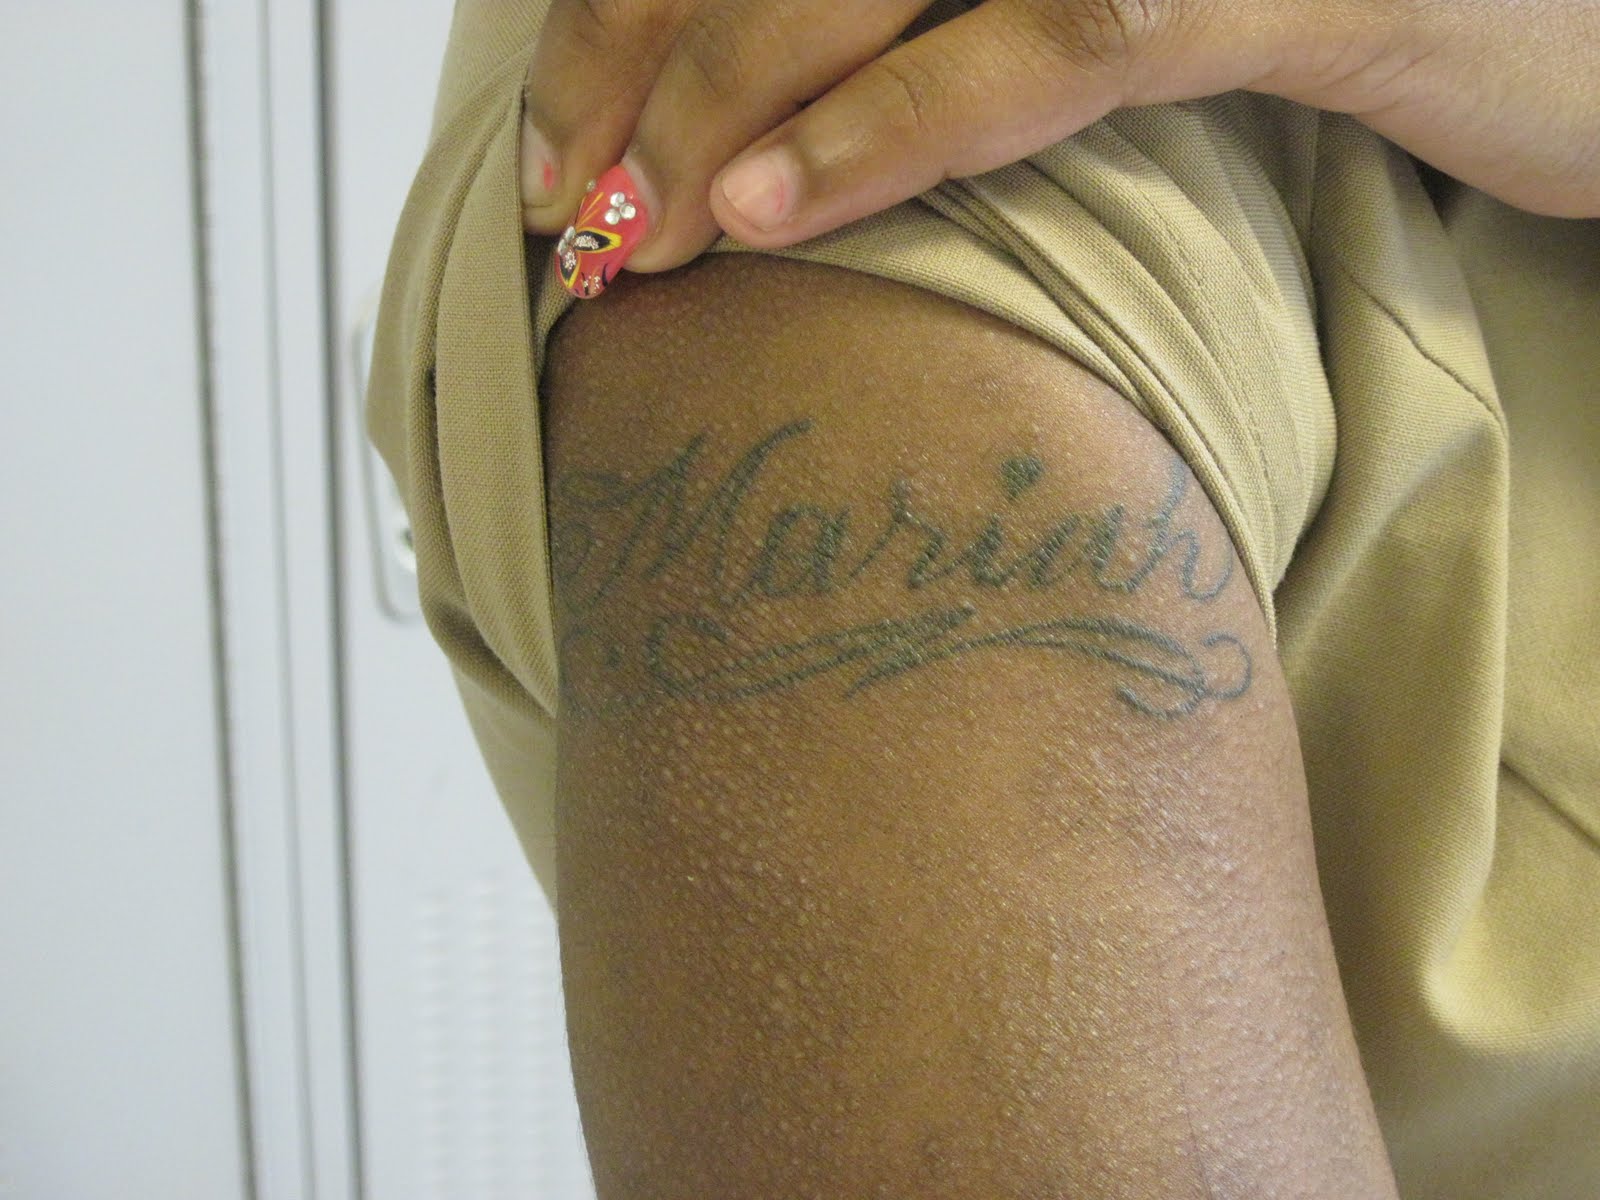 http://2.bp.blogspot.com/_MdGX6UL-Qwg/S__yJw9t-QI/AAAAAAAAAF0/ywTTsT-8D0Q/s1600/tattoos%2525252B003.jpg